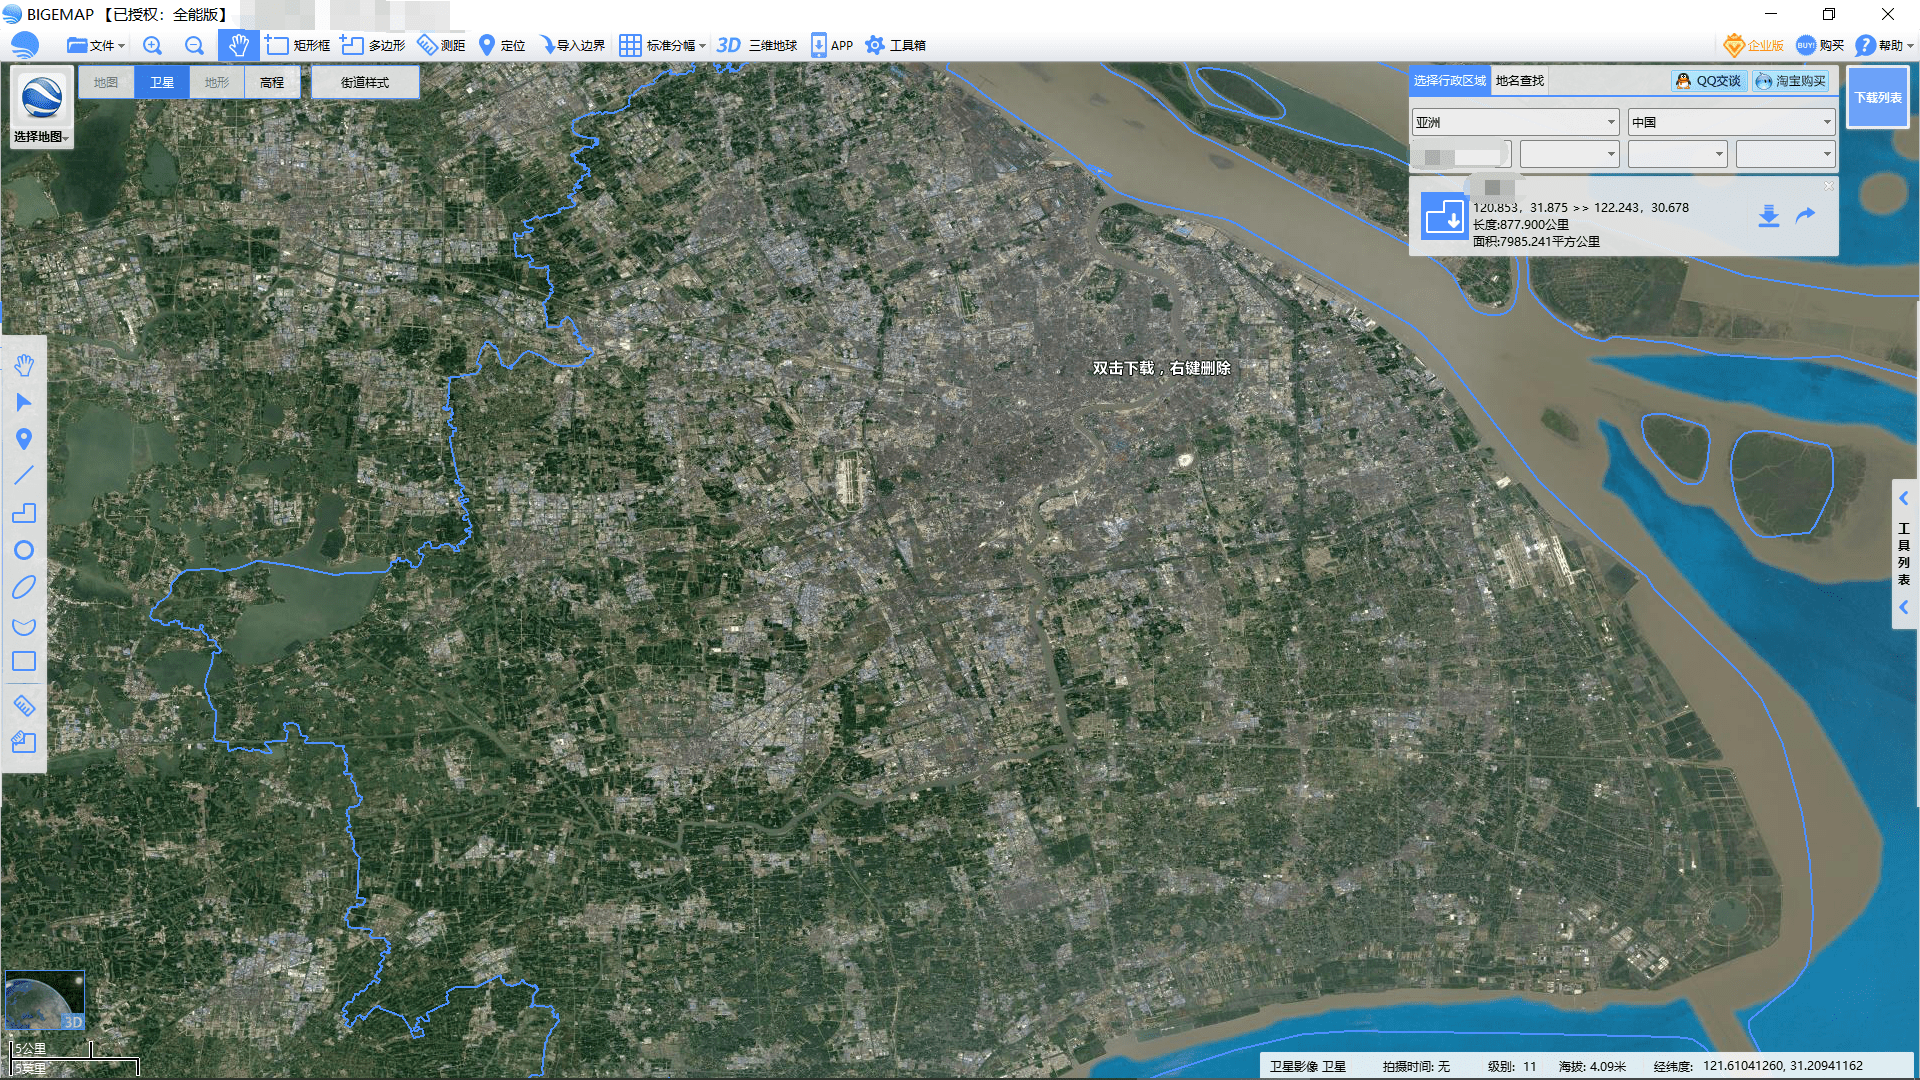 看国内各大城市卫星地图和路网!猜猜是哪座城市